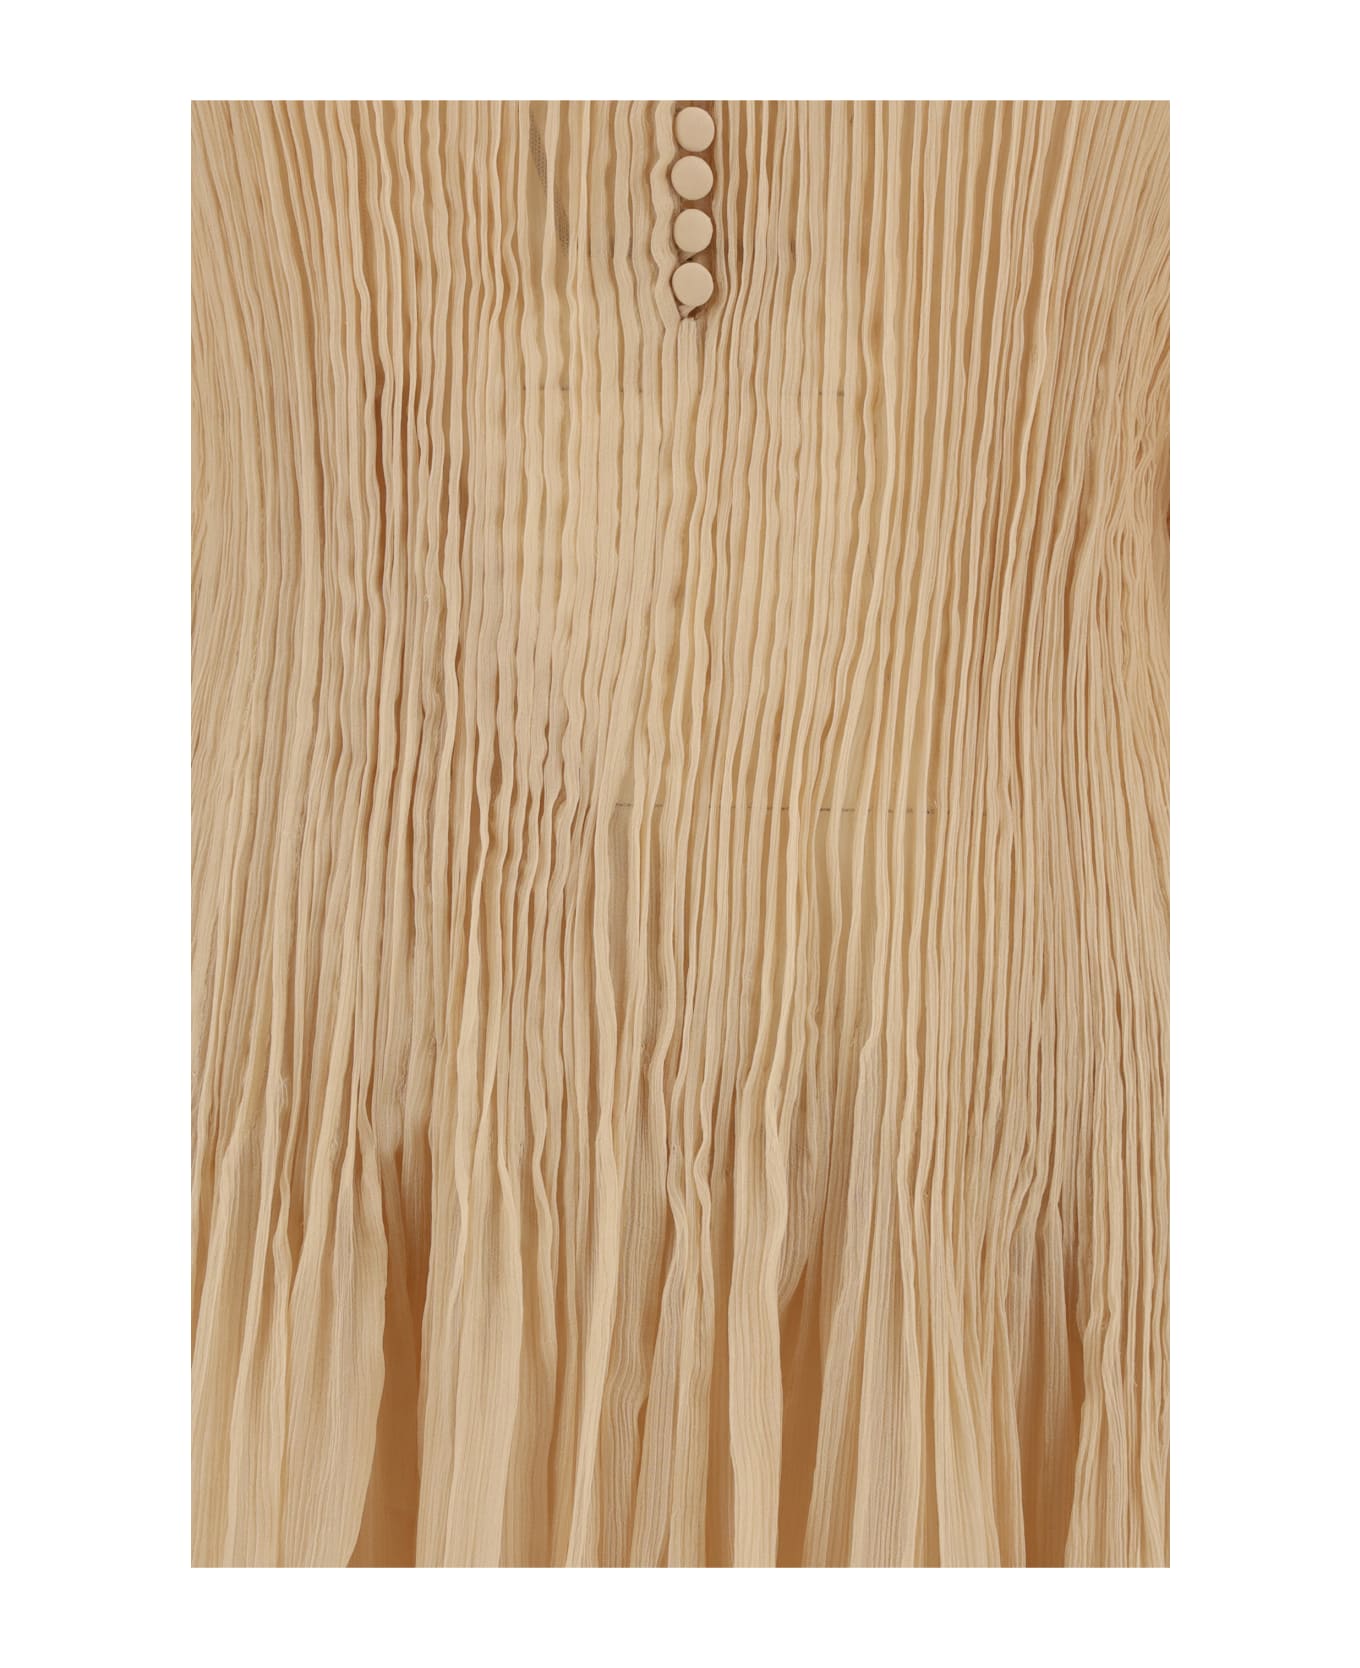 Ermanno Scervino Long Dress - Incense/beige